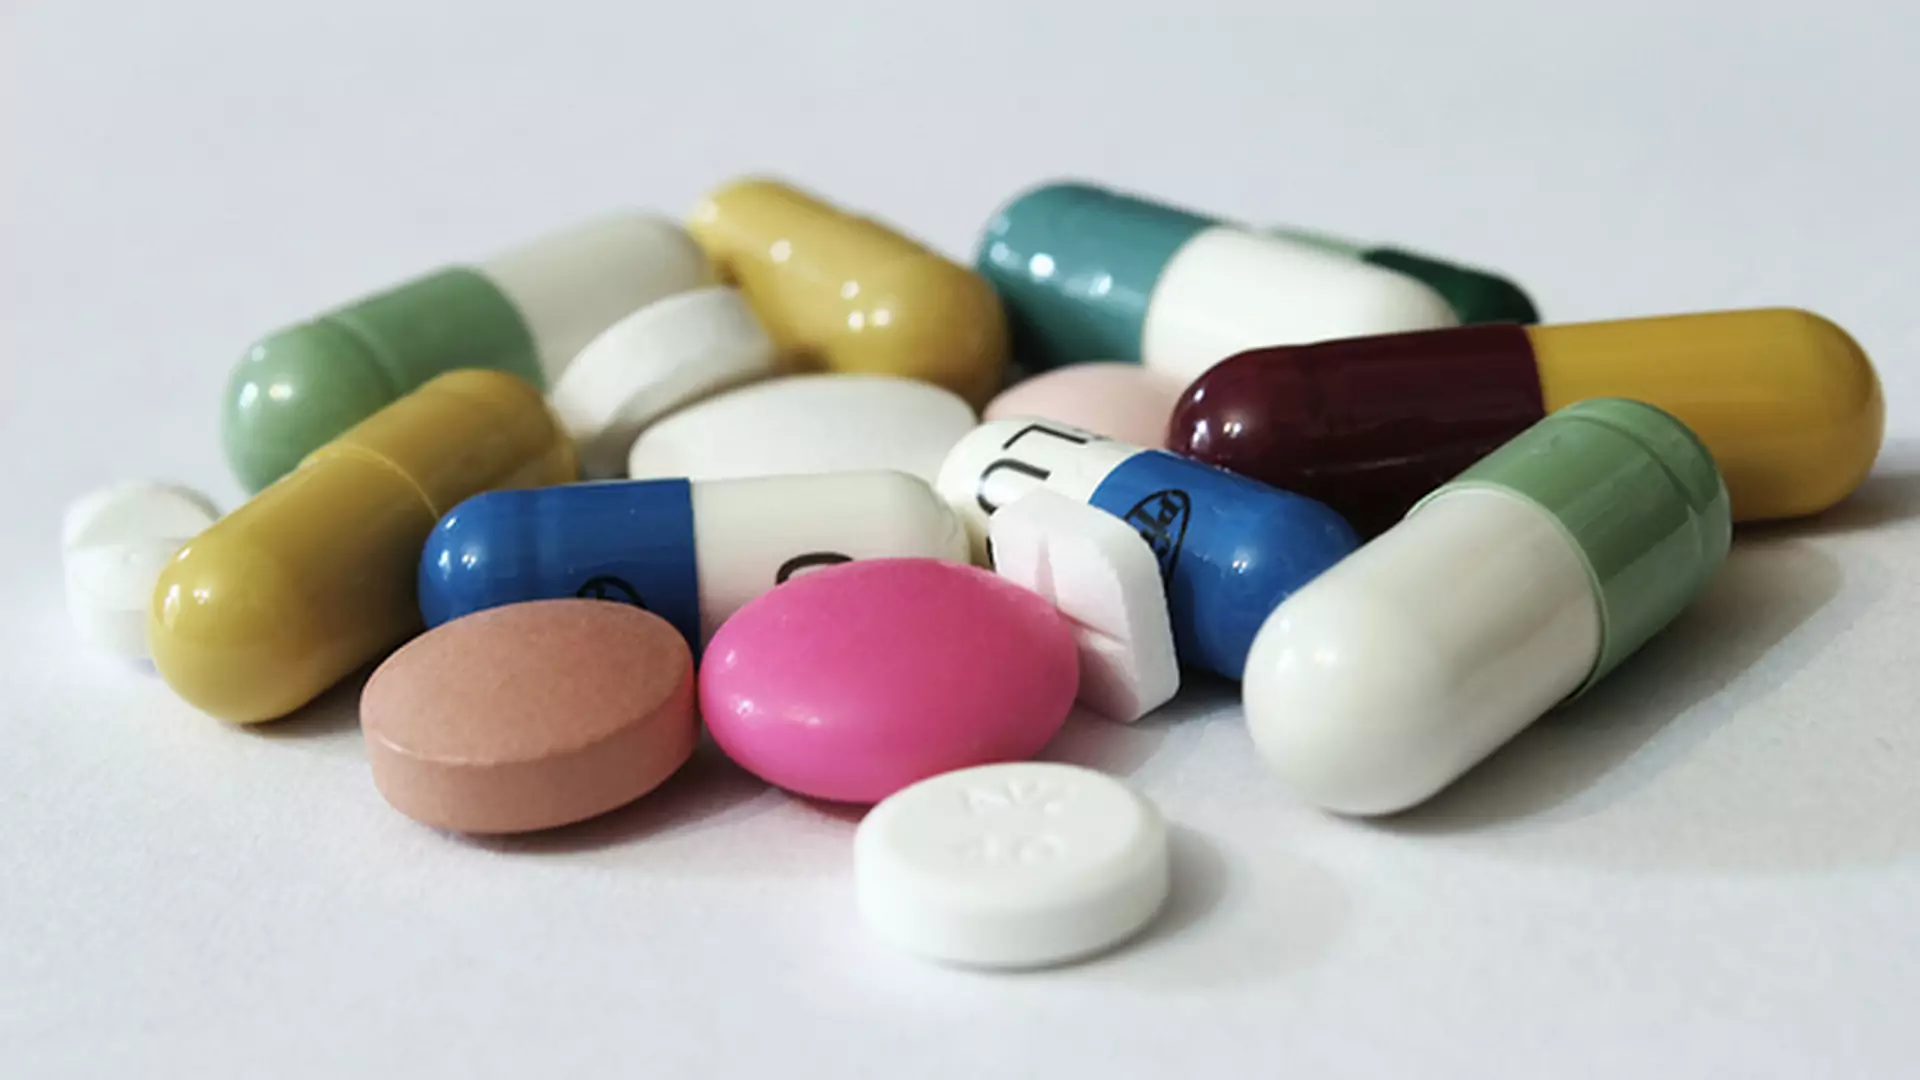 Leki za darmo do 18 roku życia, w tym tabletki antykoncepcyjne - tak będzie w Szwecji od nowego roku